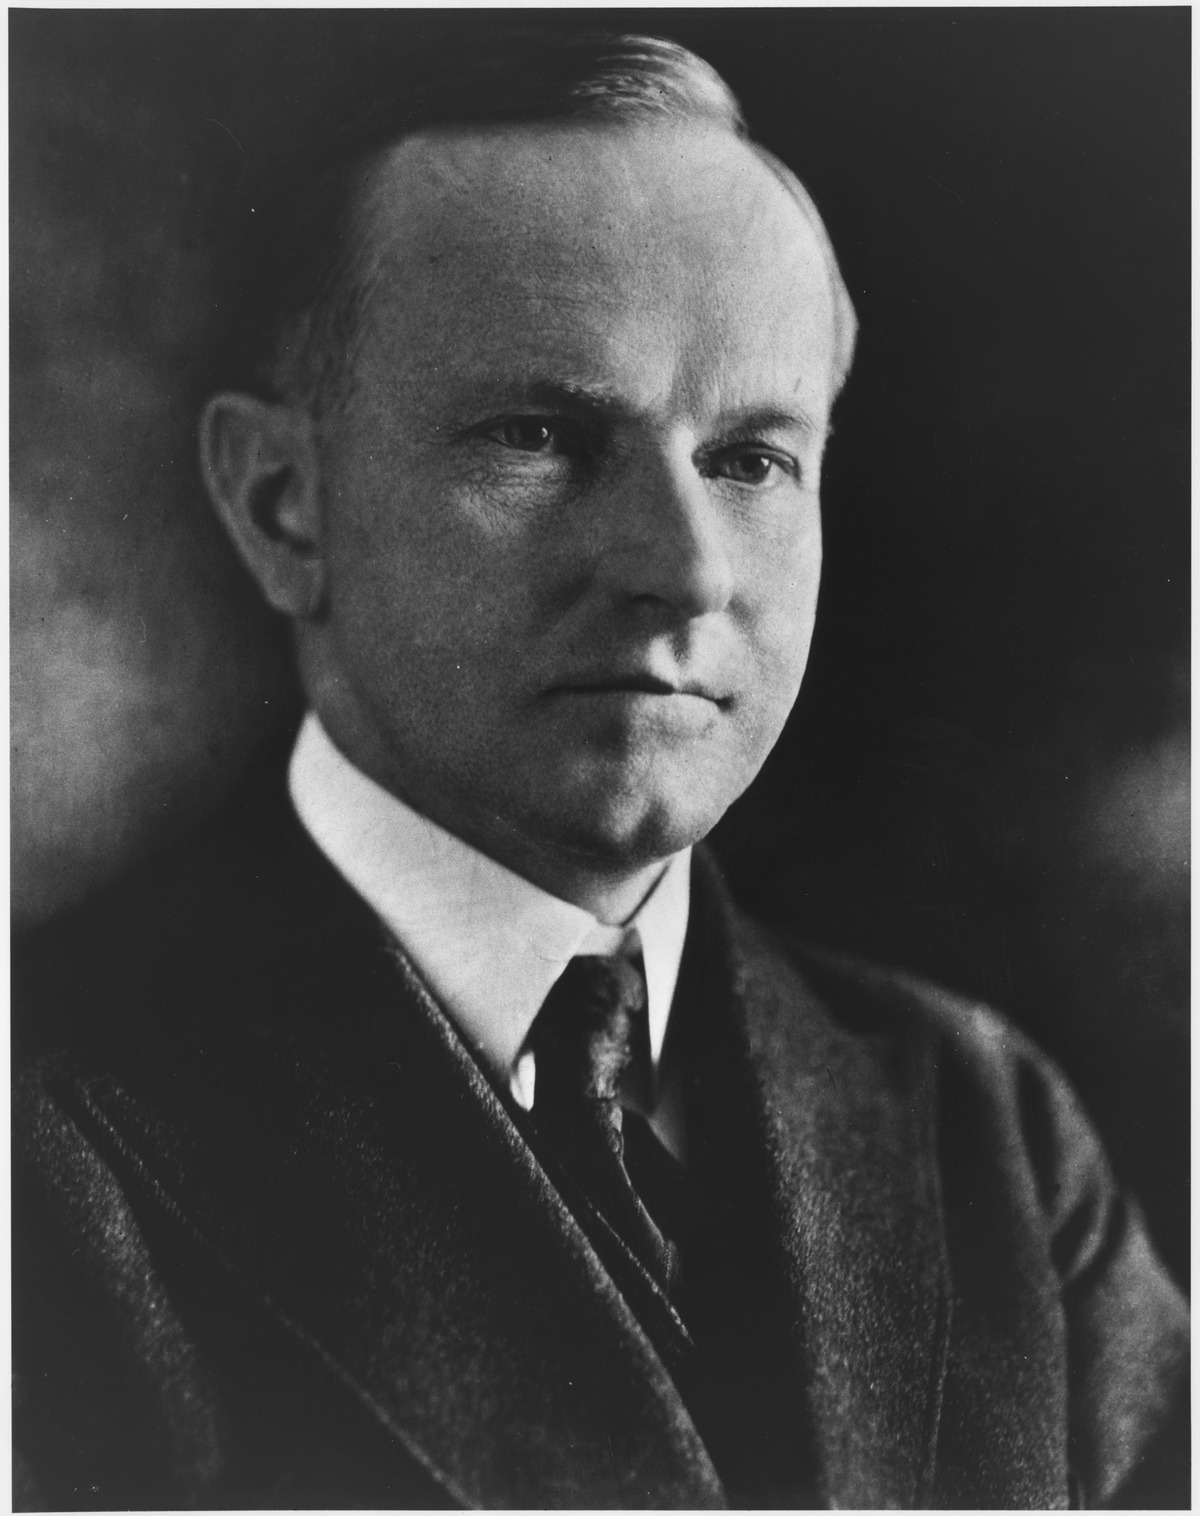 Coolidge’s Inaugural Address Warned of Biden-style ‘Legalized Larceny’